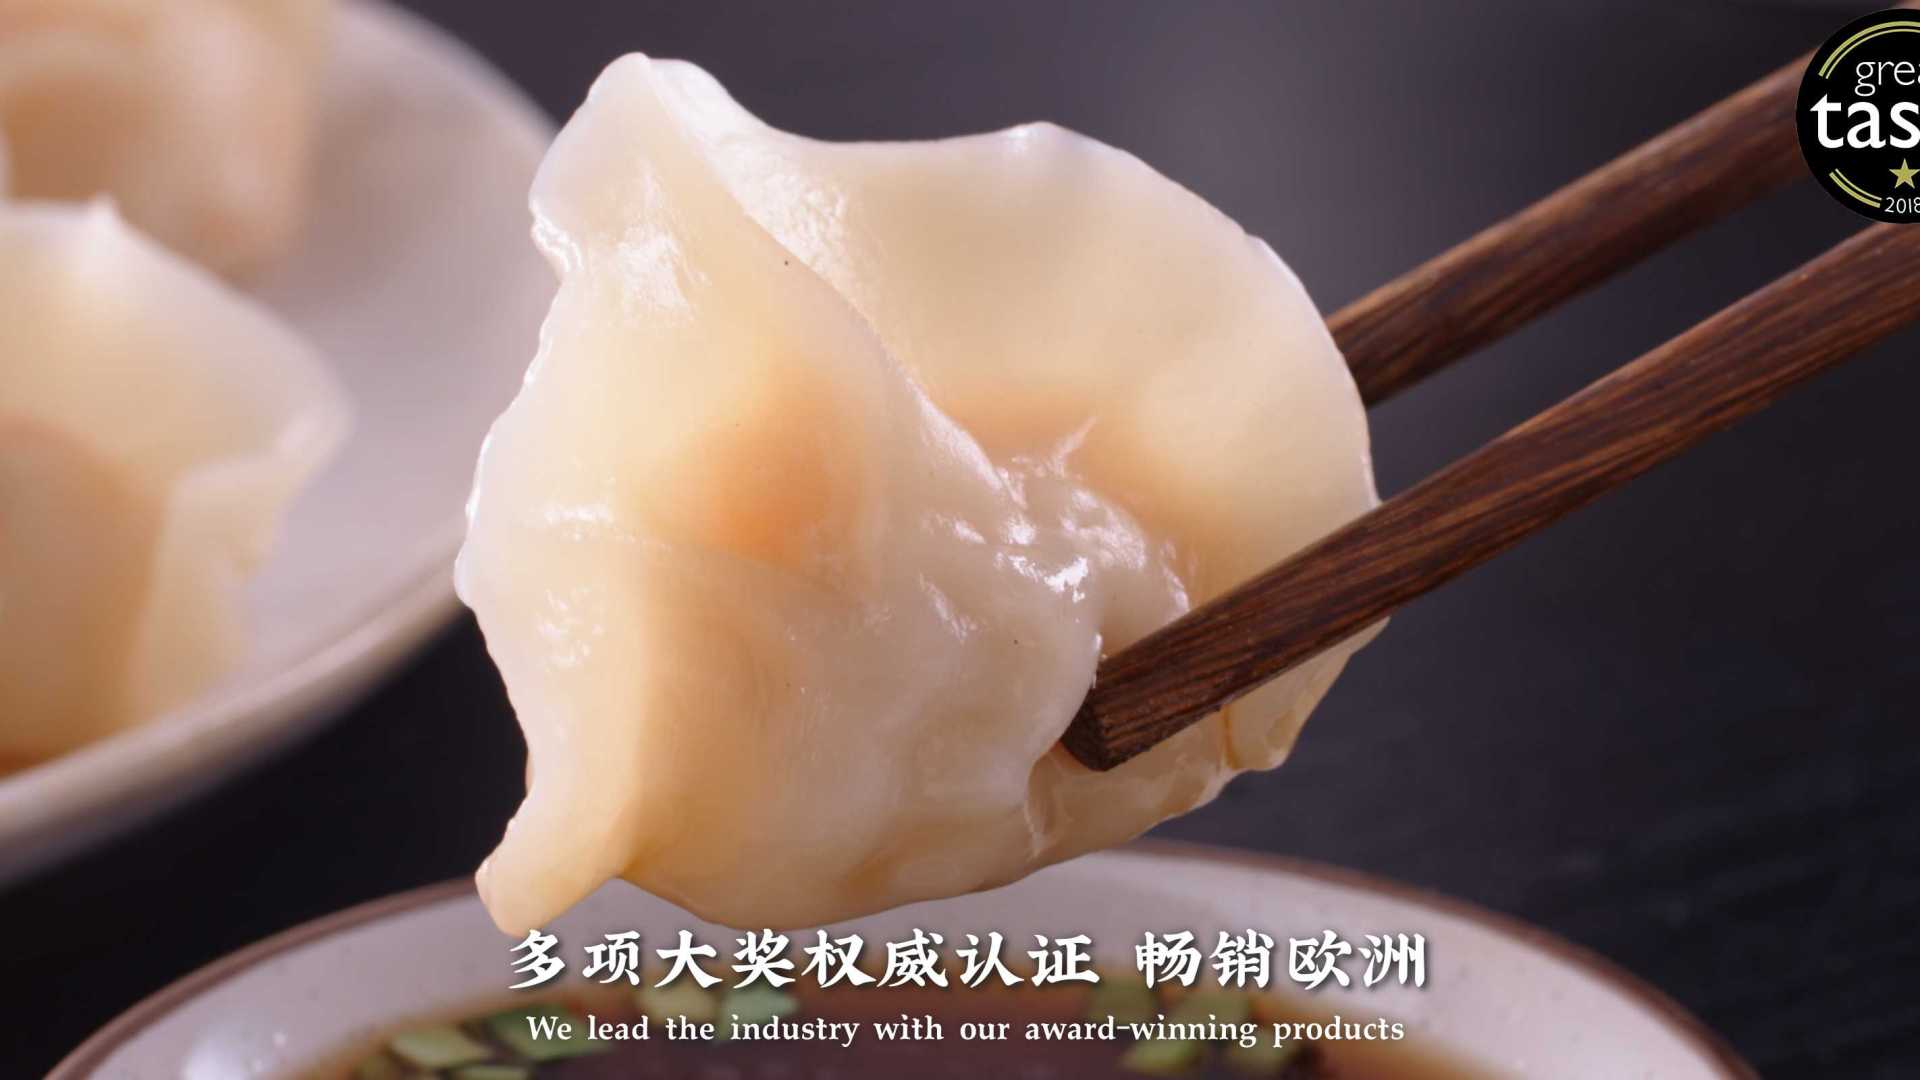 功夫食品系列产品广告--功夫水饺肉卷小笼包